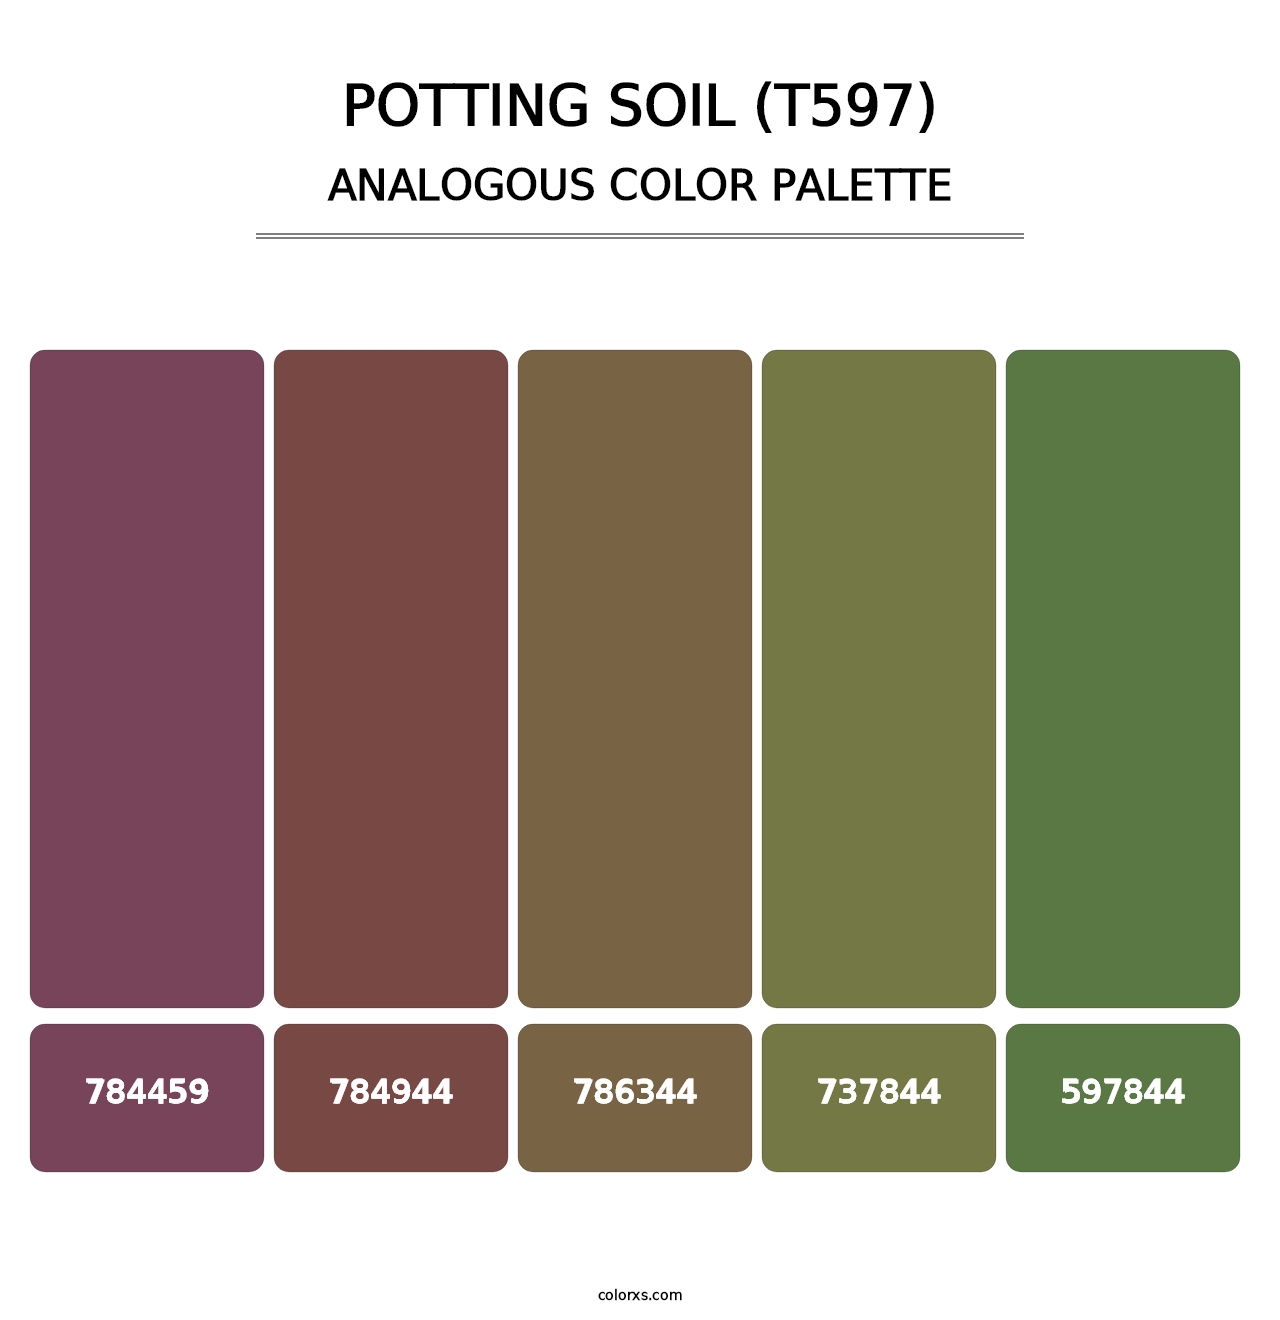 Potting Soil (T597) - Analogous Color Palette